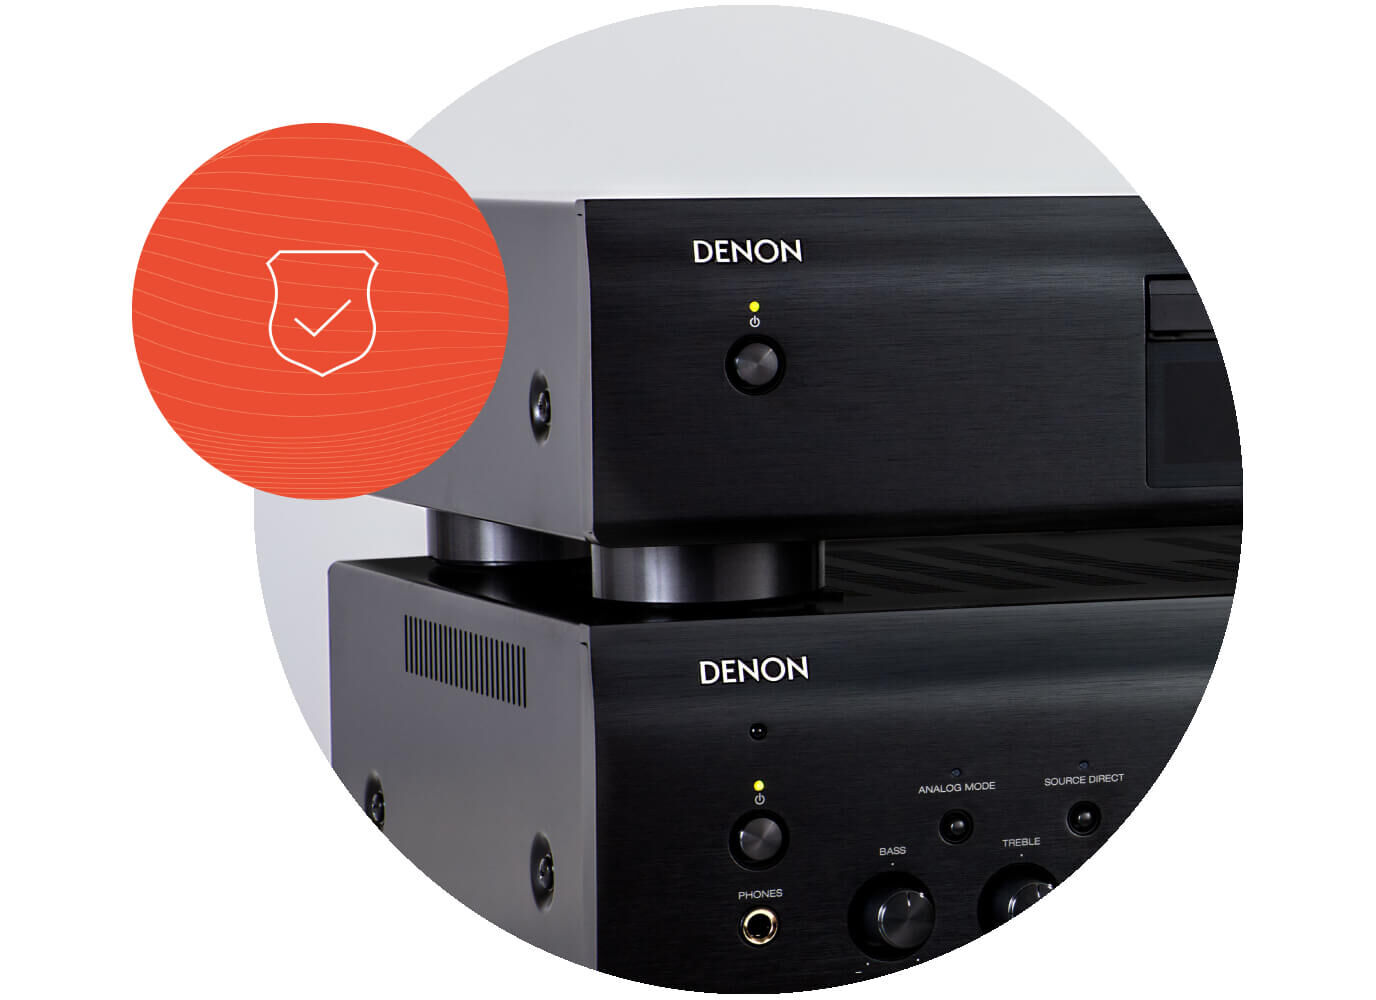 DCD-600NE - CD Player with AL32 Processing | Denon - Canada